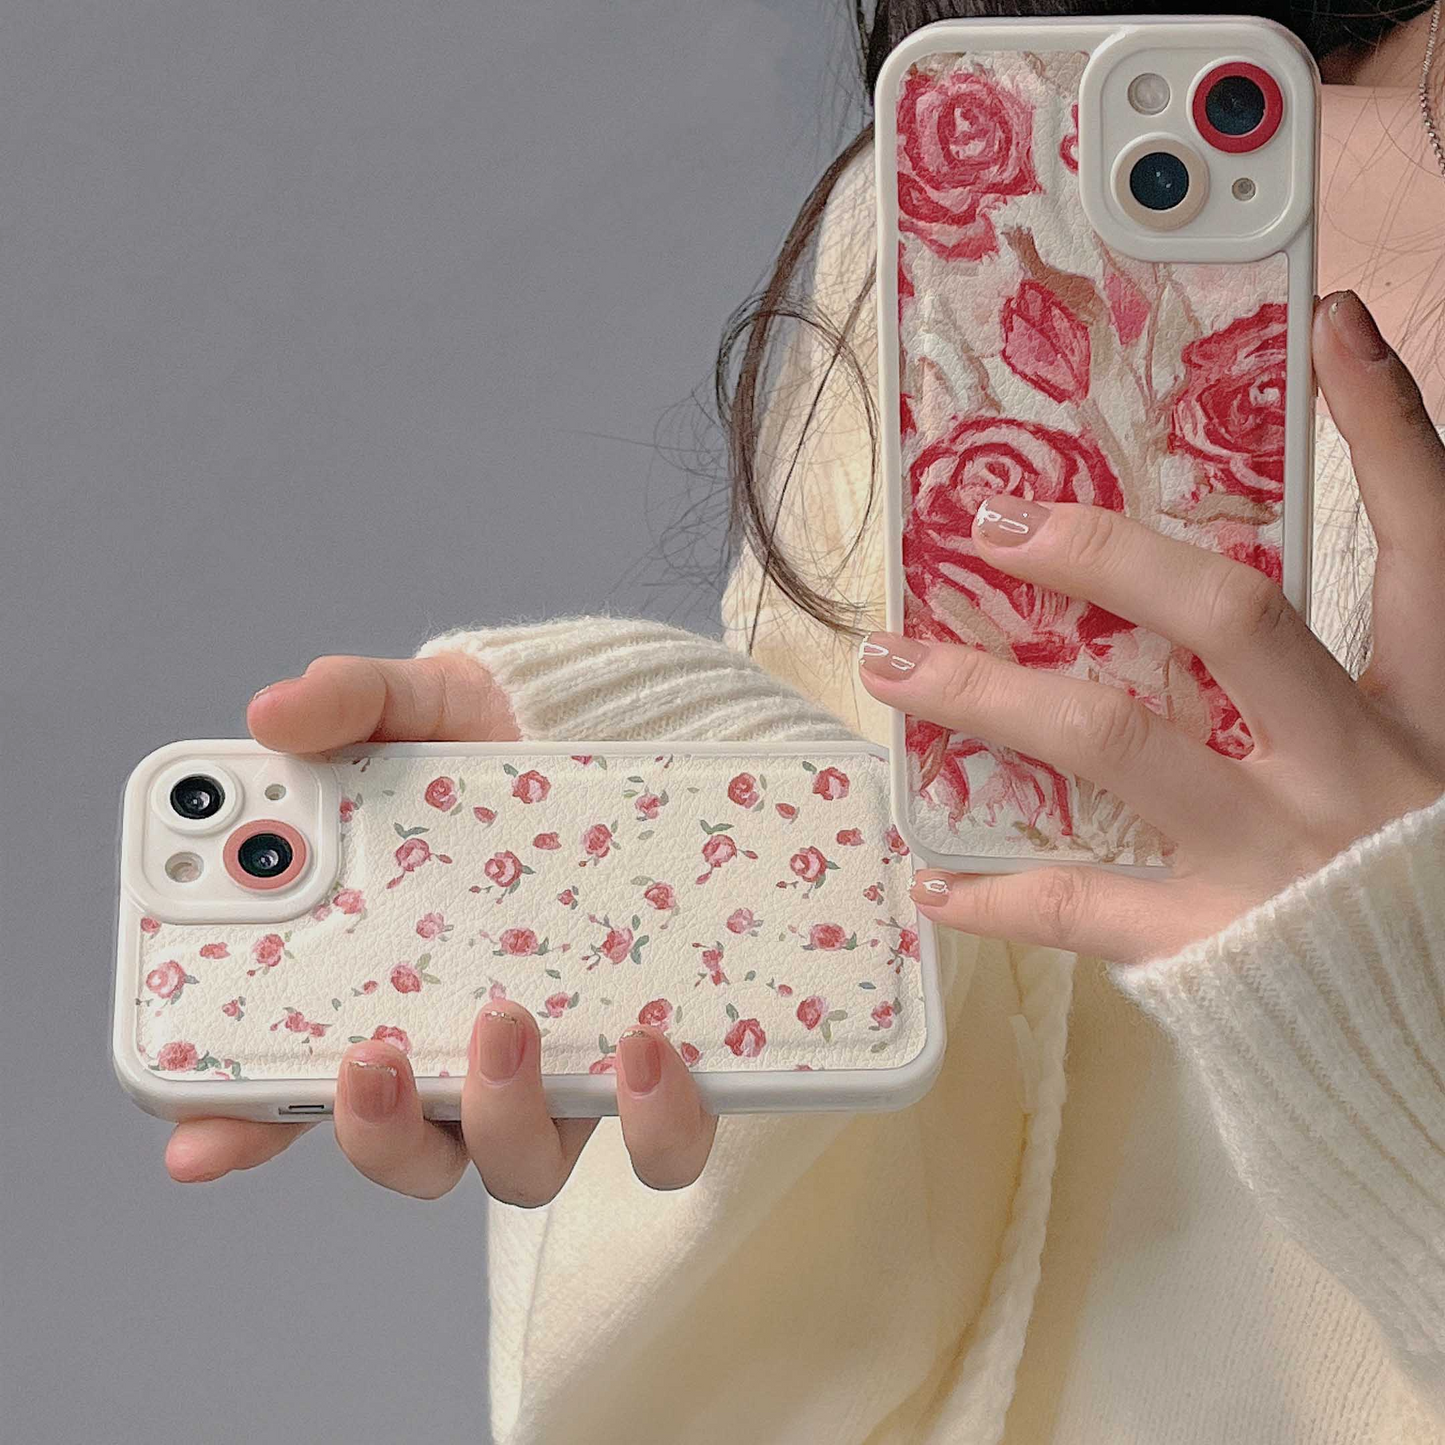 Grandma's Rose Wallpaper iPhone Case (2 Designs)